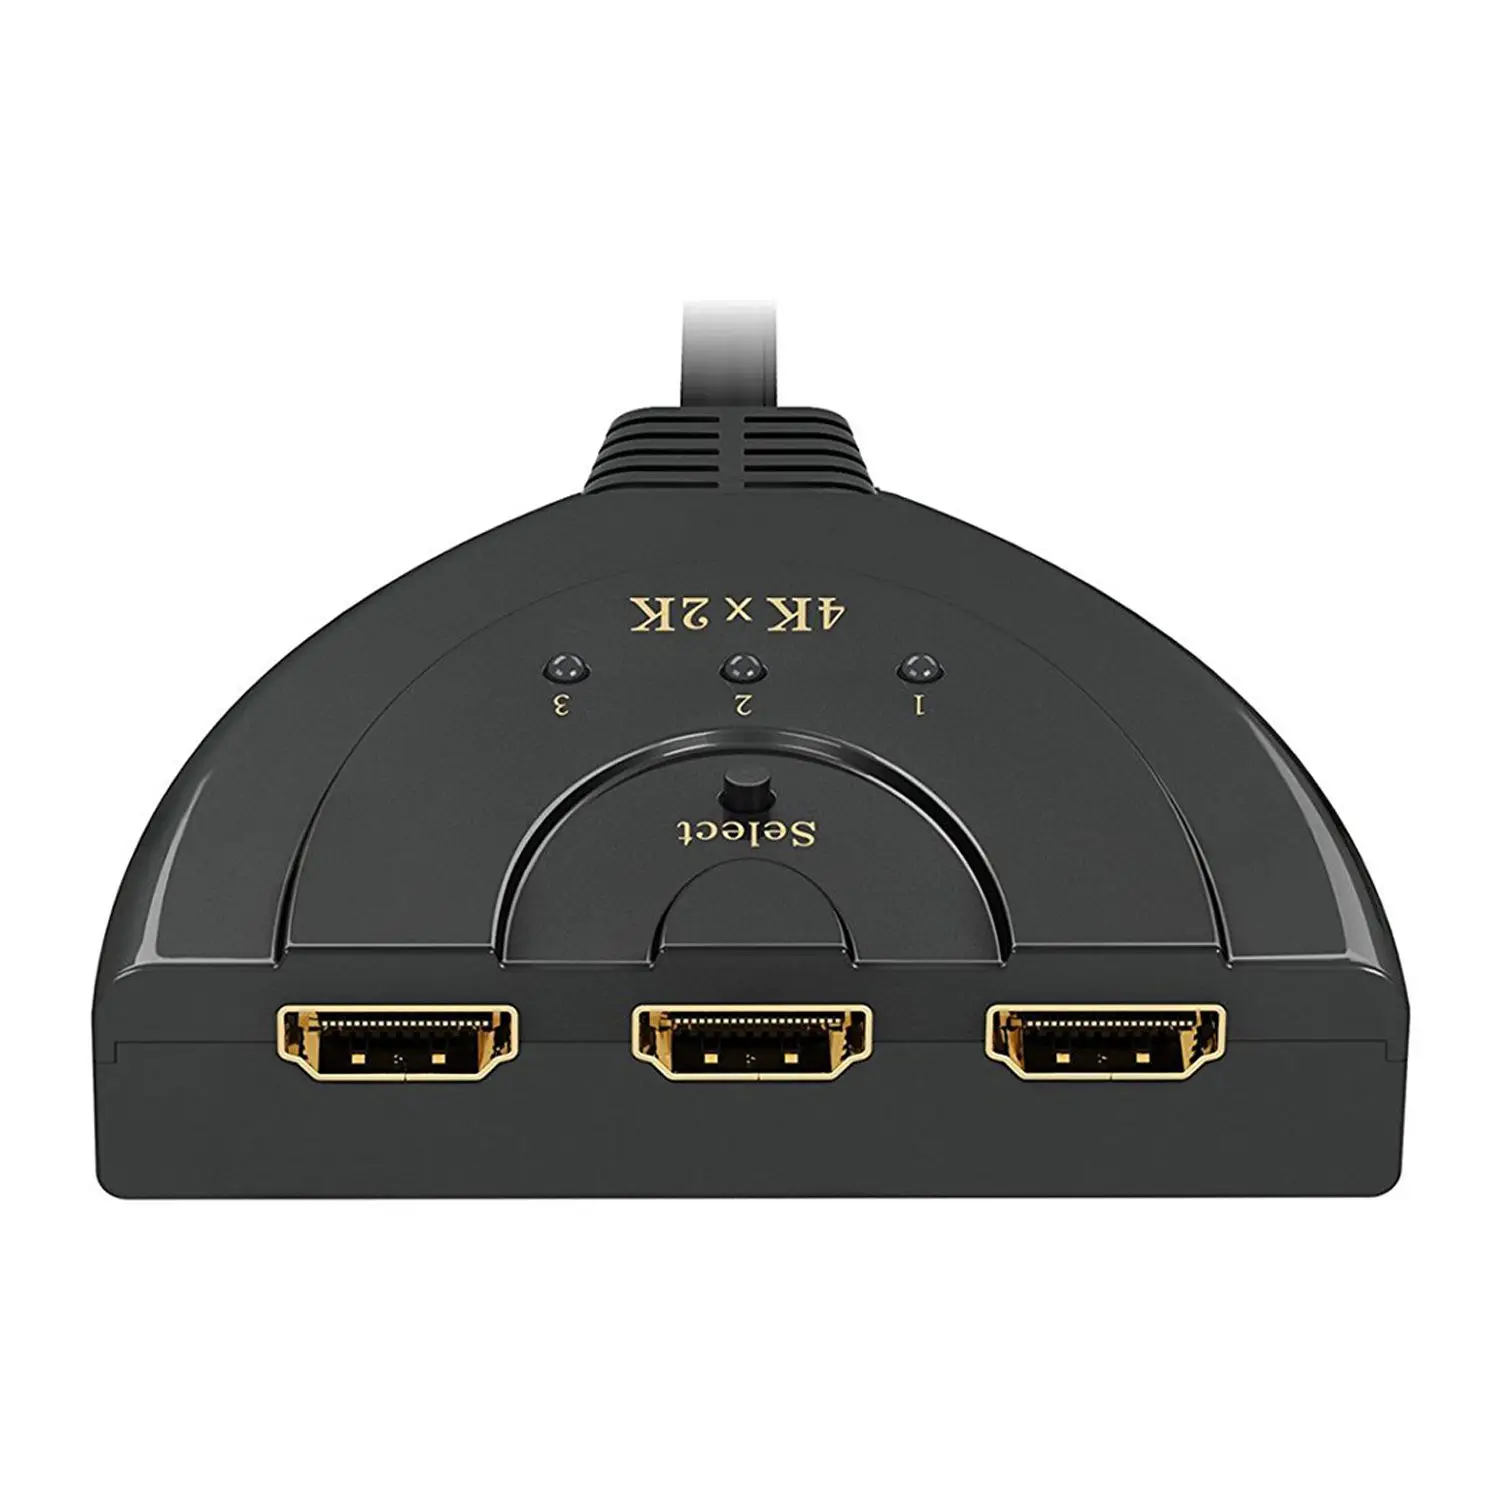 HDMI переключатель с пультом дистанционного управления 4 K, 3-Порты и разъёмы Разделитель с мультимедийным интерфейсом высокой четкости HDMI преключатель Sup Порты и разъёмы s 4 K/полный HD1080p/3D с высоким Скорость соединительный кабель